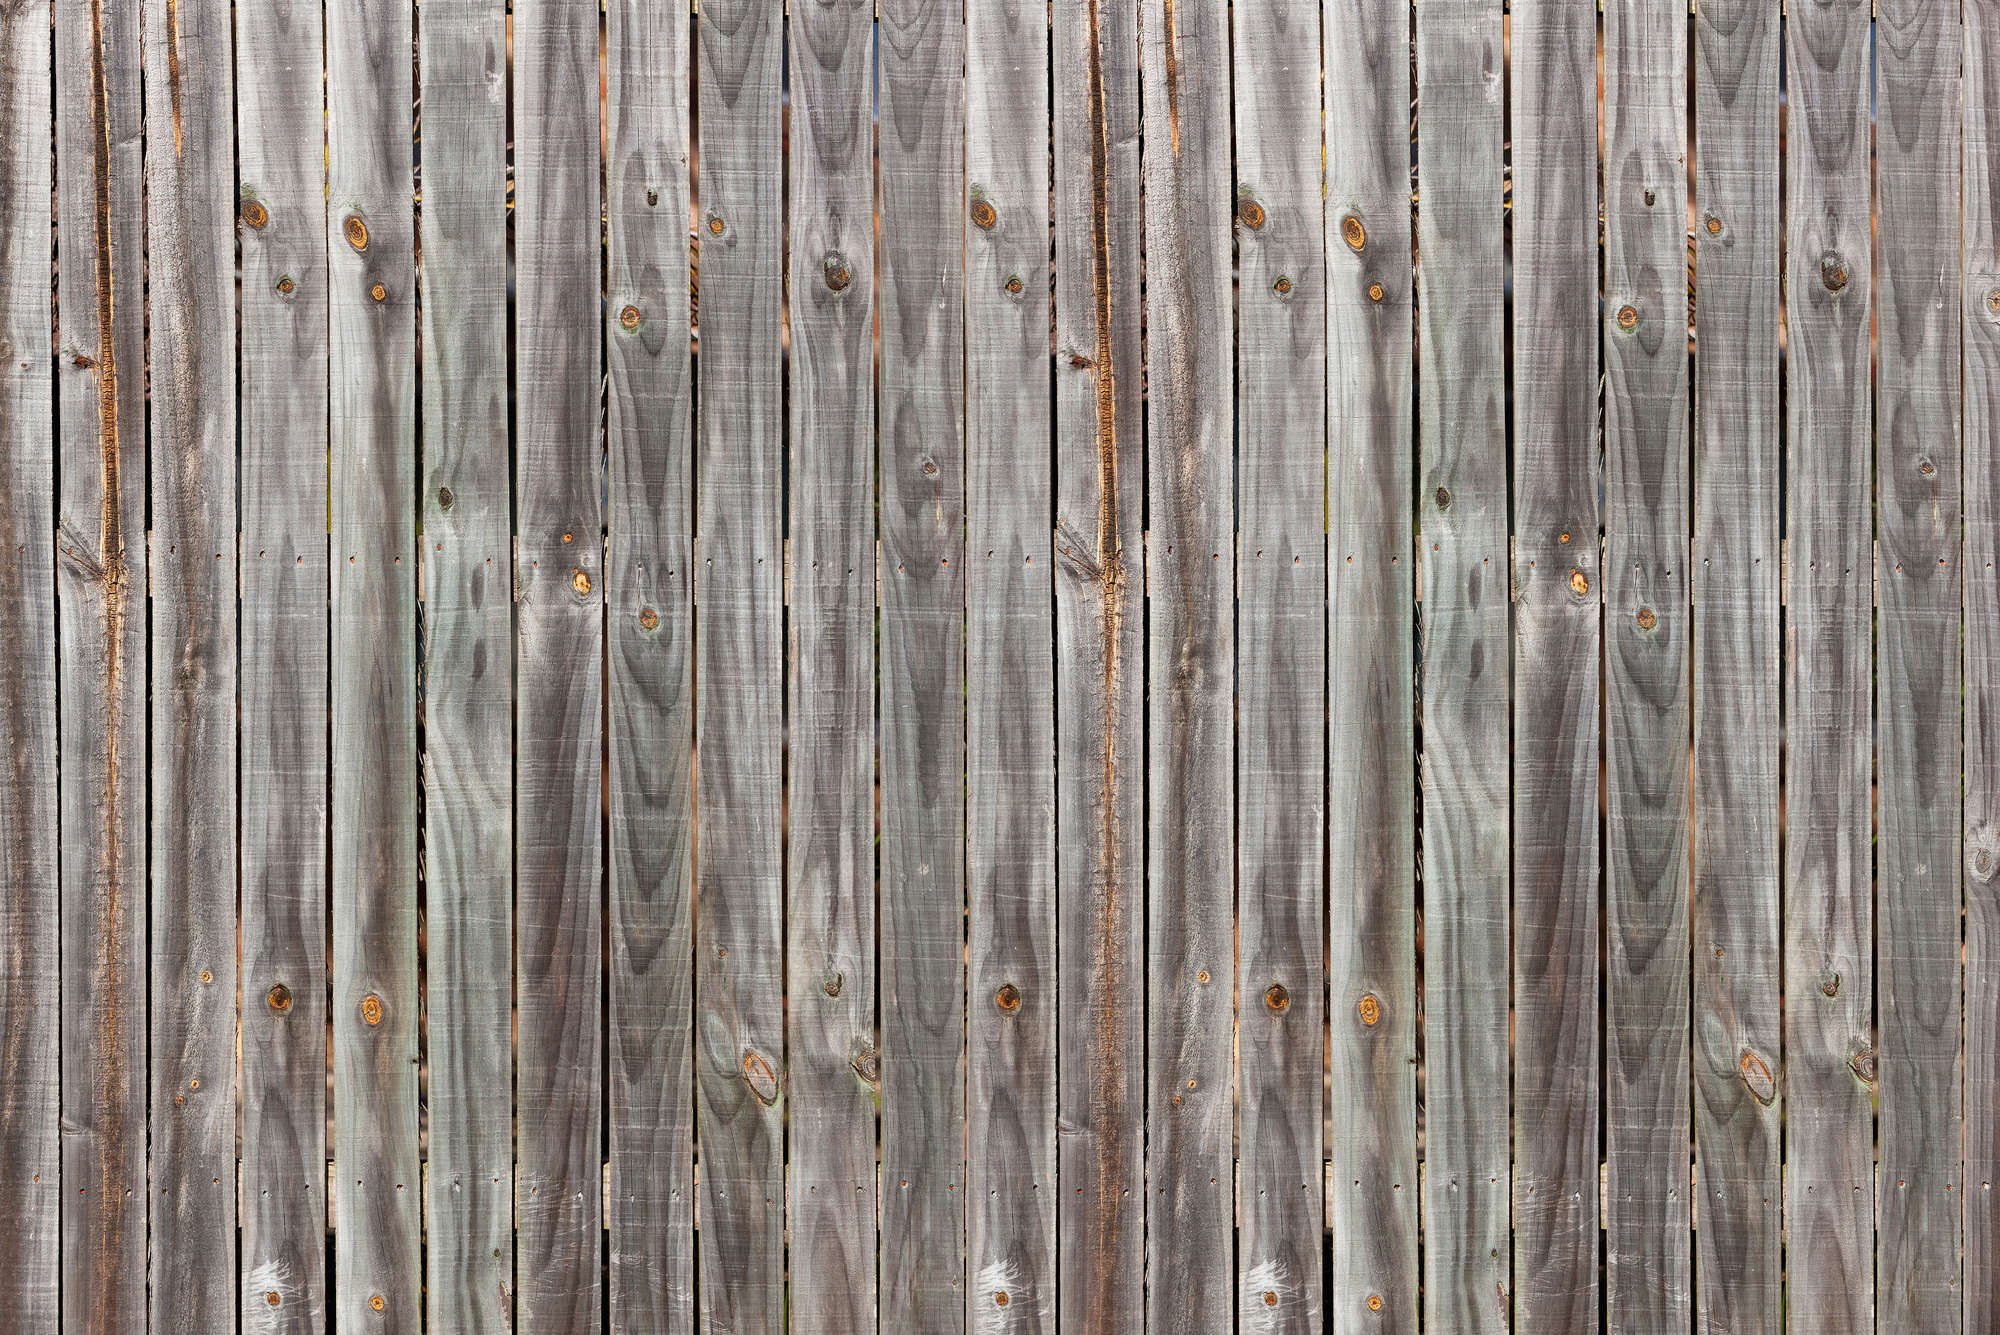             Holz dunkel – Bretterwand rustikal, Bretterzaun verwittert
        